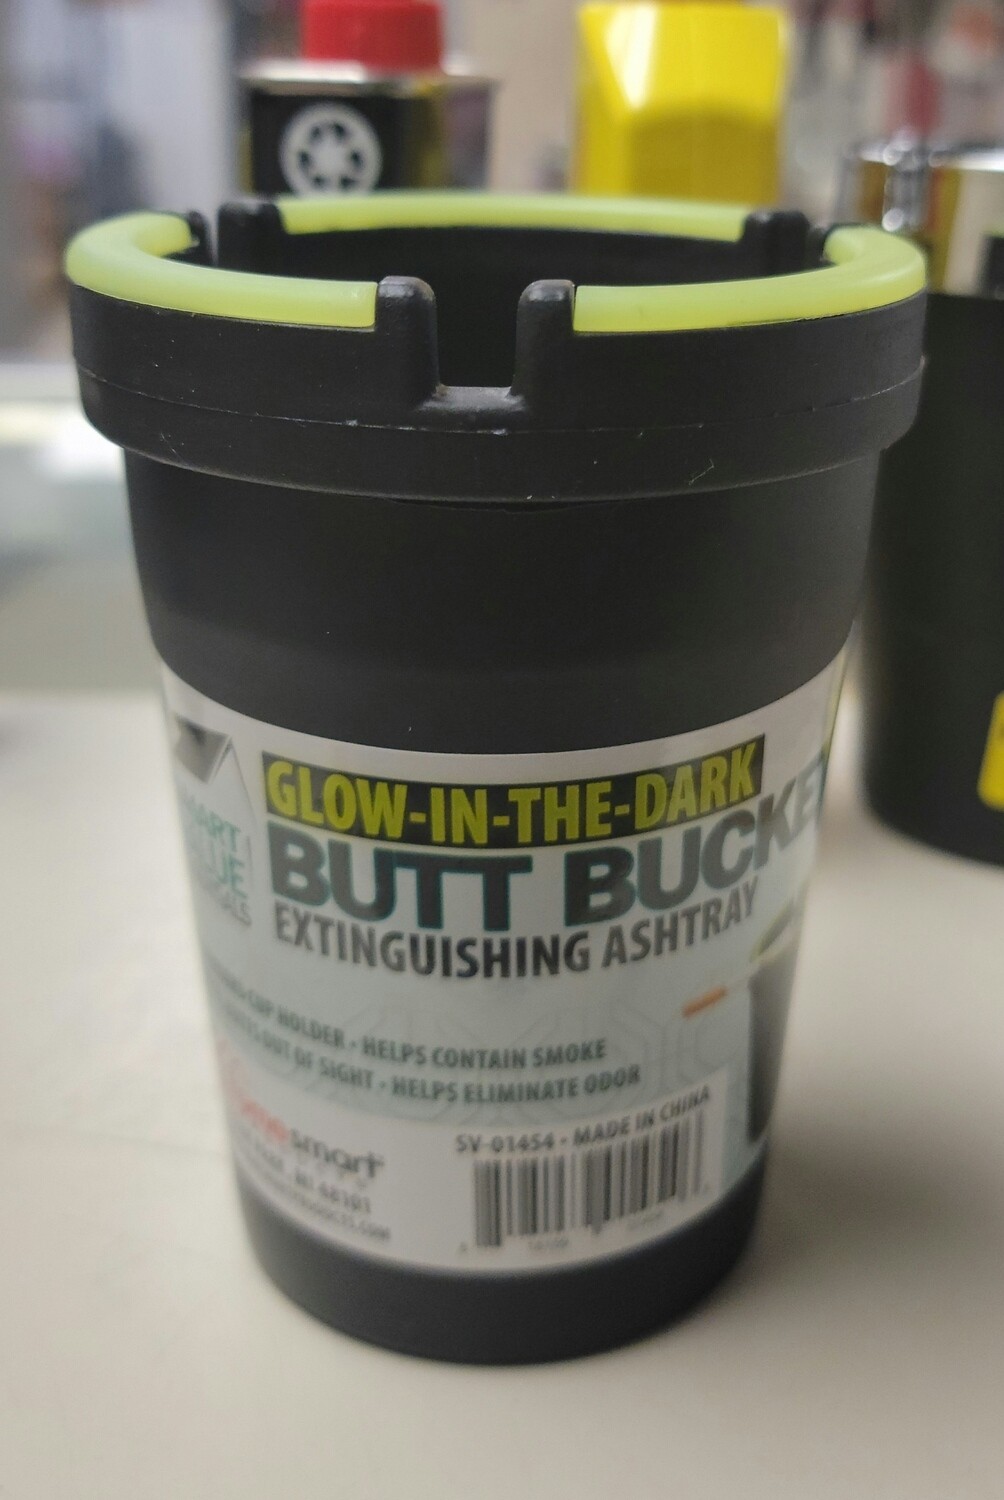 Butt Bucket Extinguishing Ashtray